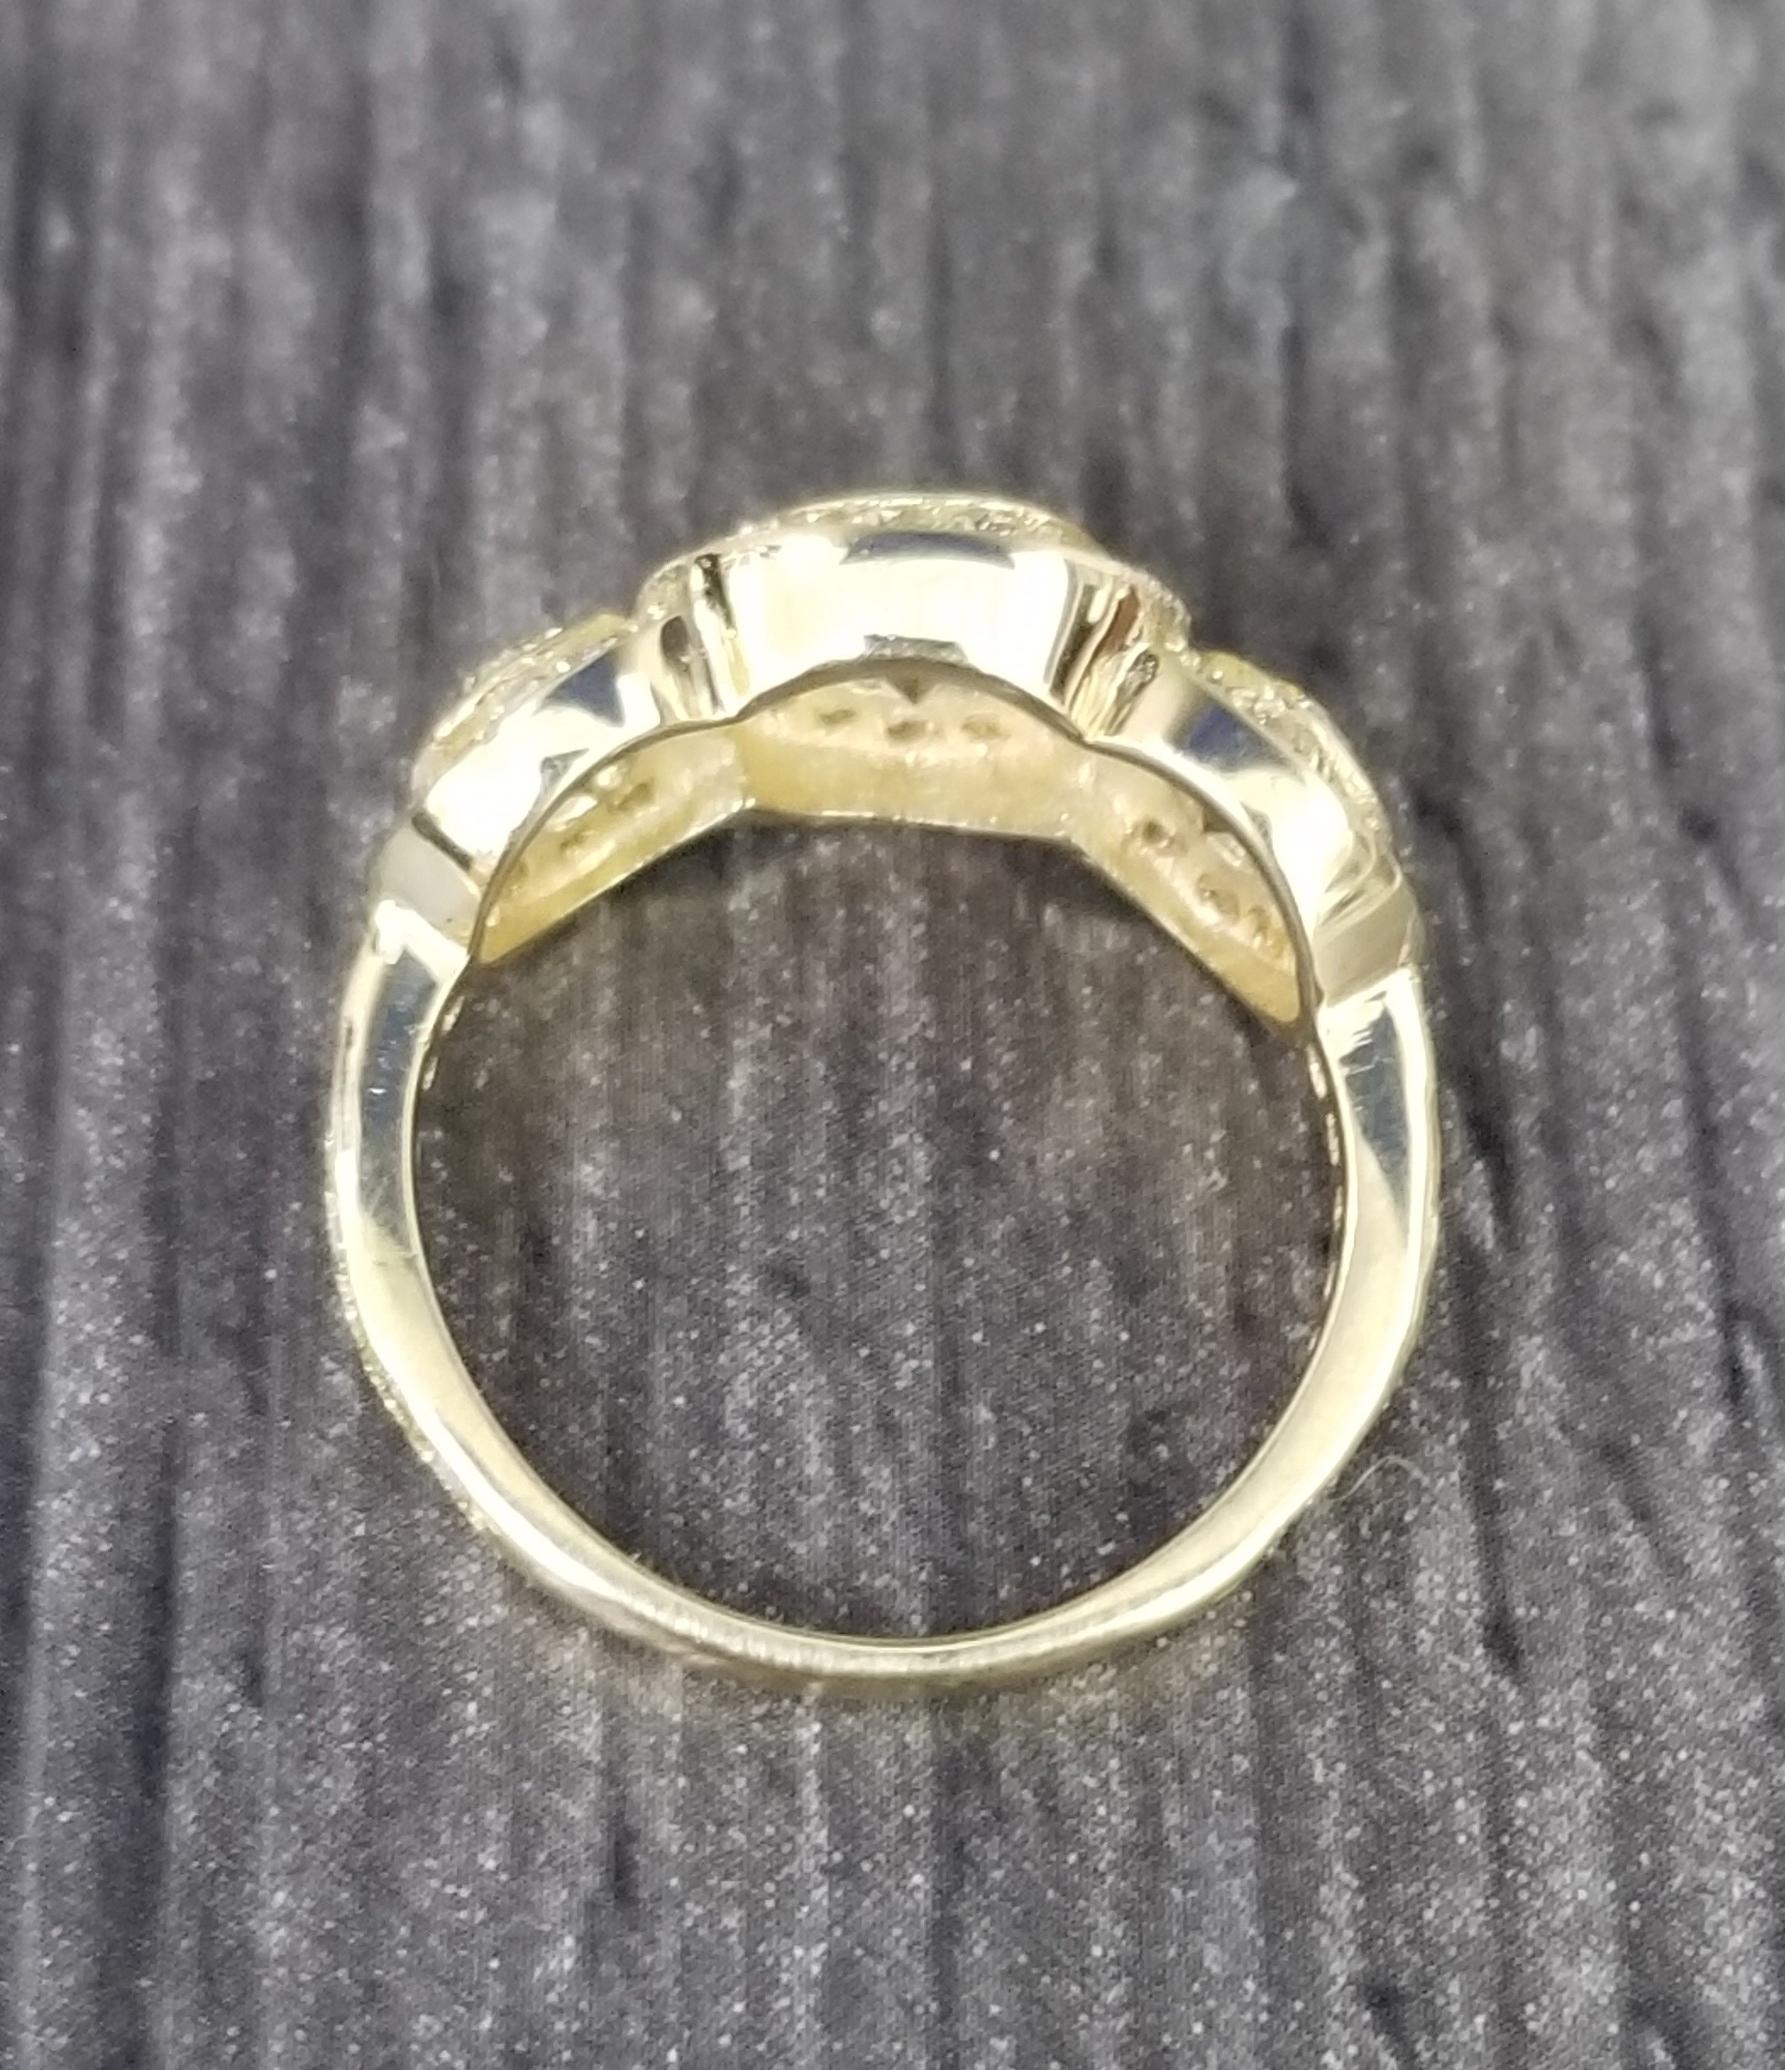 3 stone halo diamond engagement ring